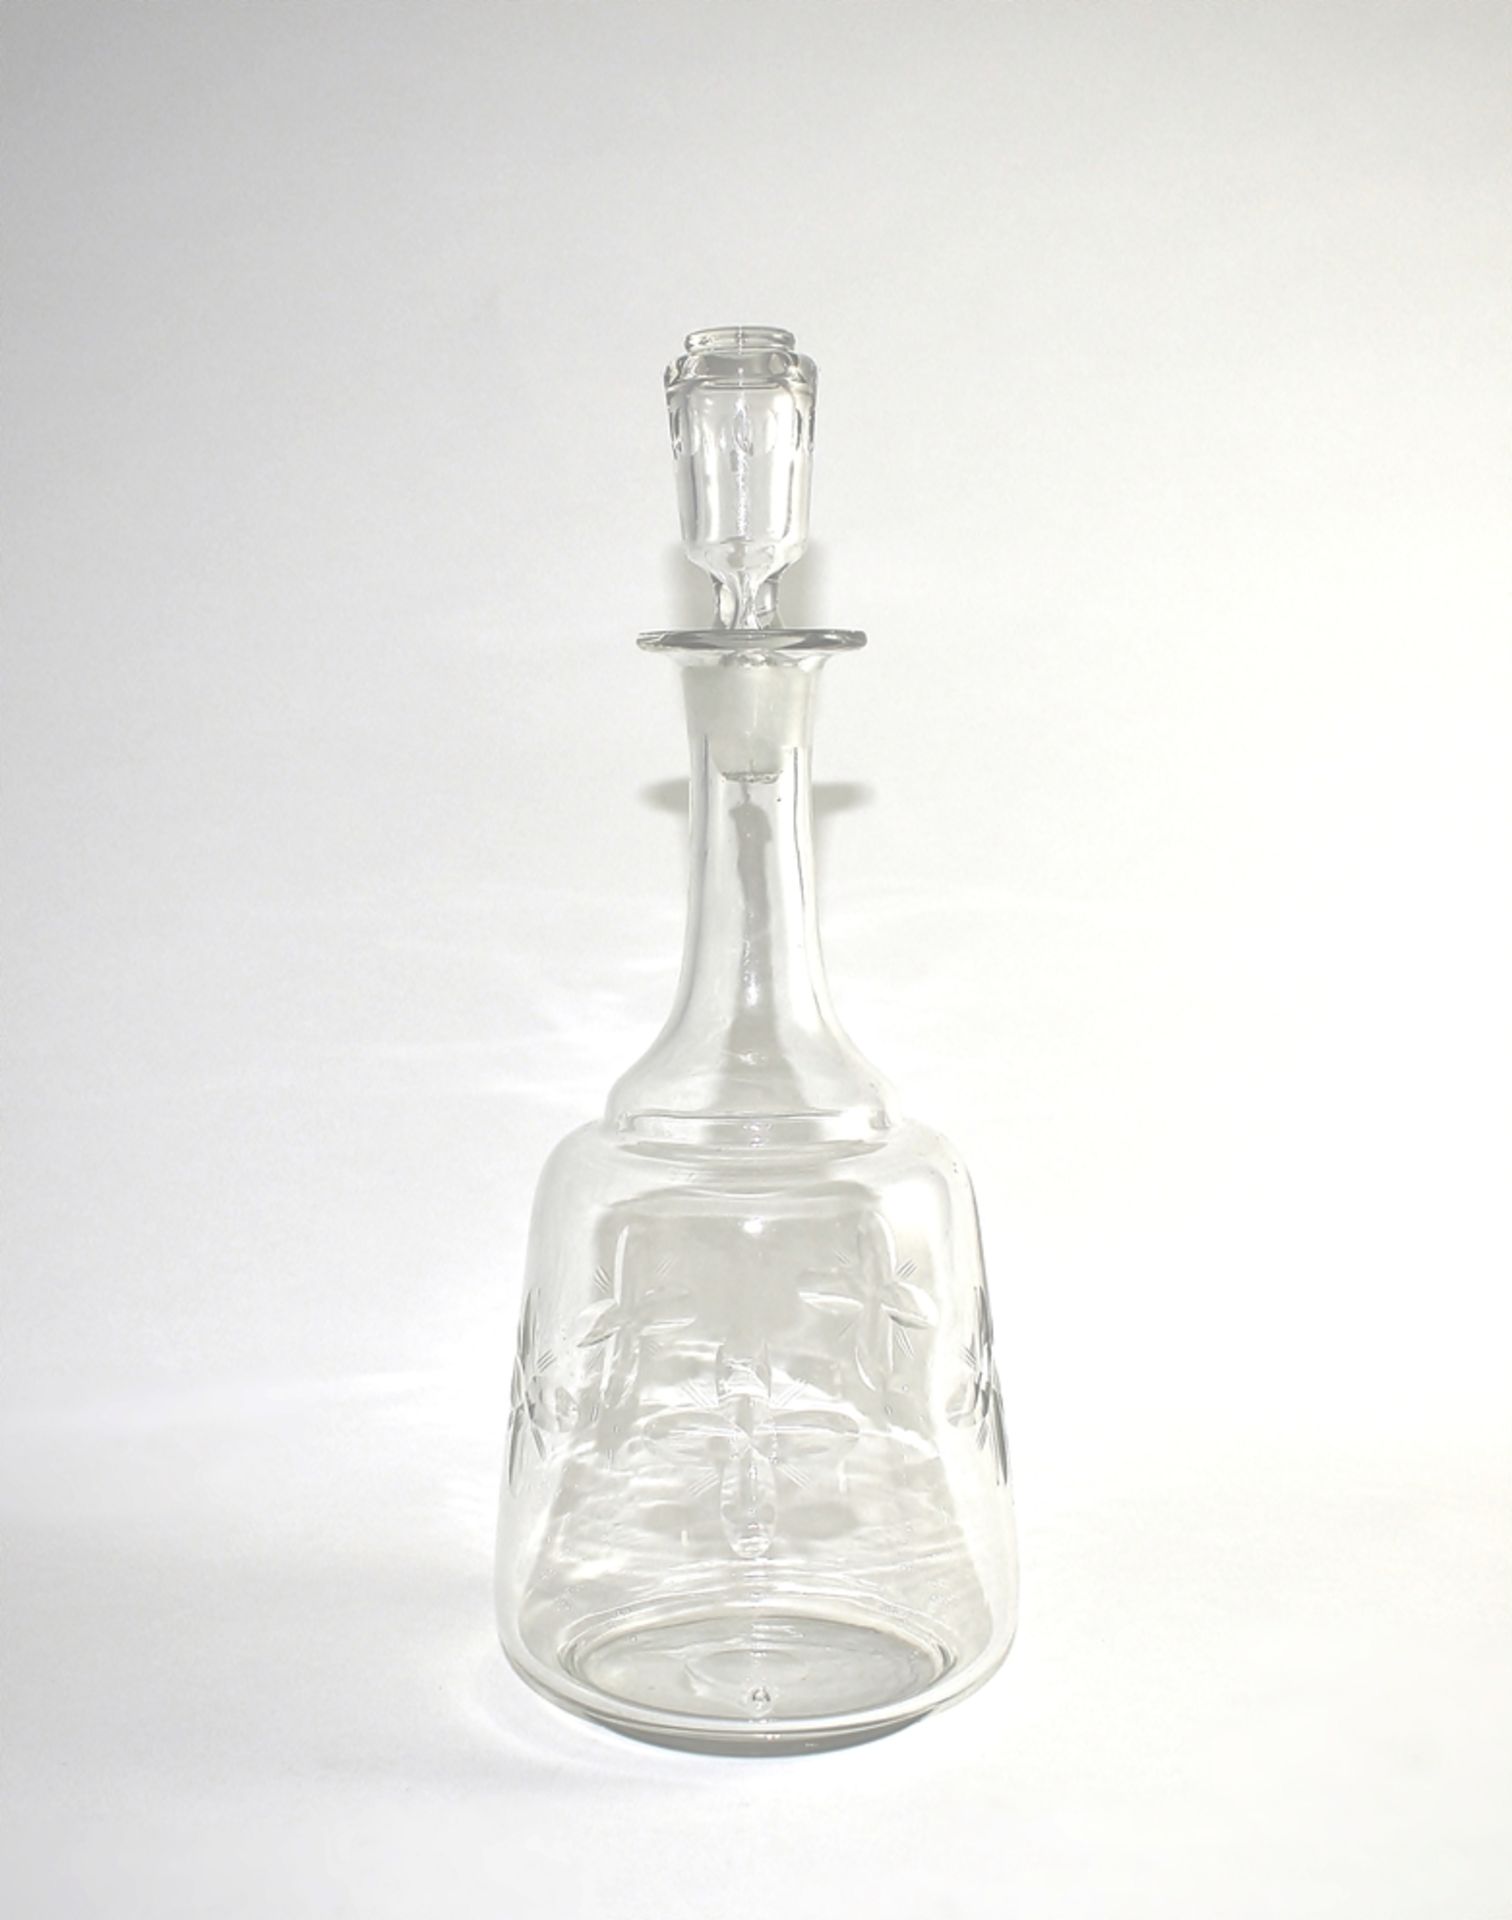 Glaskaraffe mit Stöpsel. Farbloses Glas mit Zierschliff. Anfang 20. Jh., H 32 cm